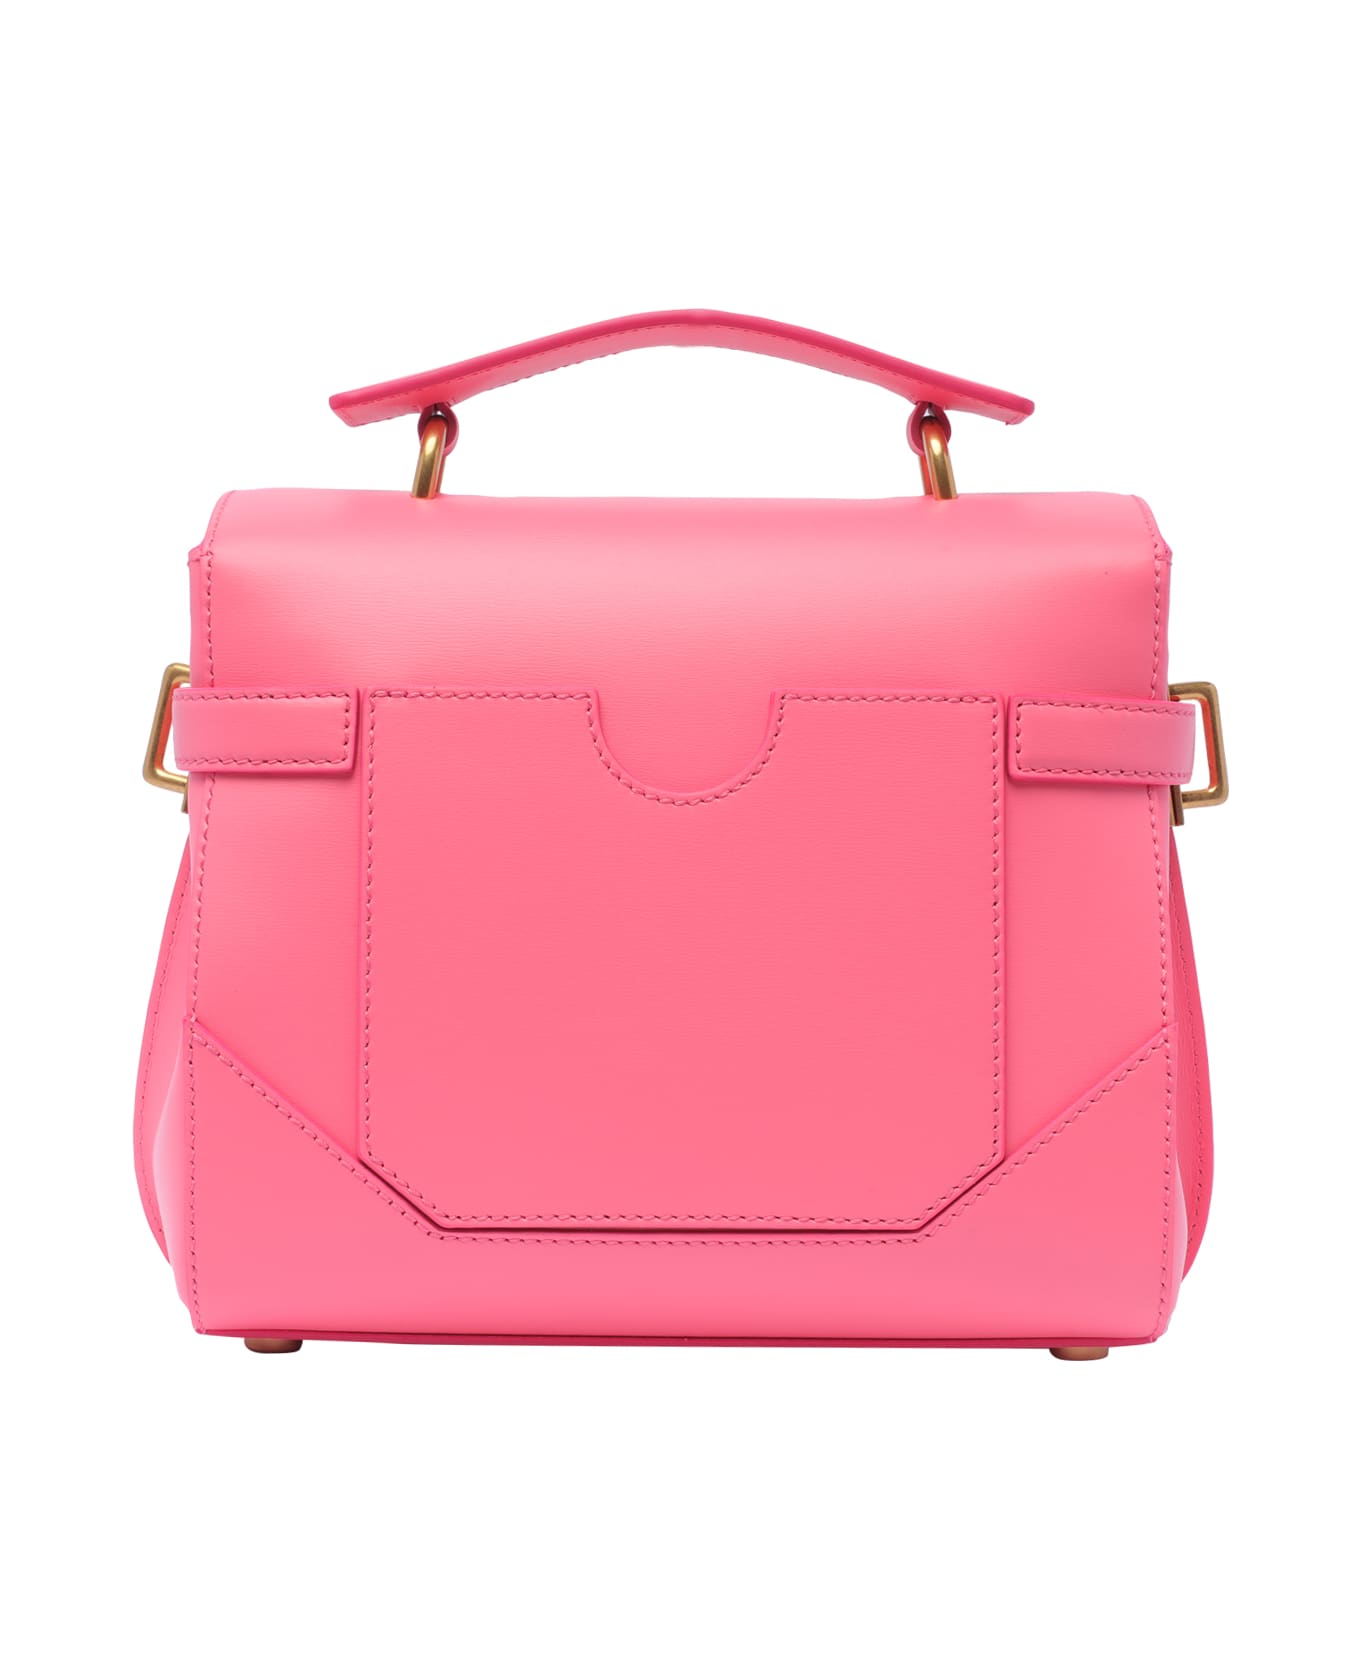 Balmain B-buzz 23 Handbag - Pink